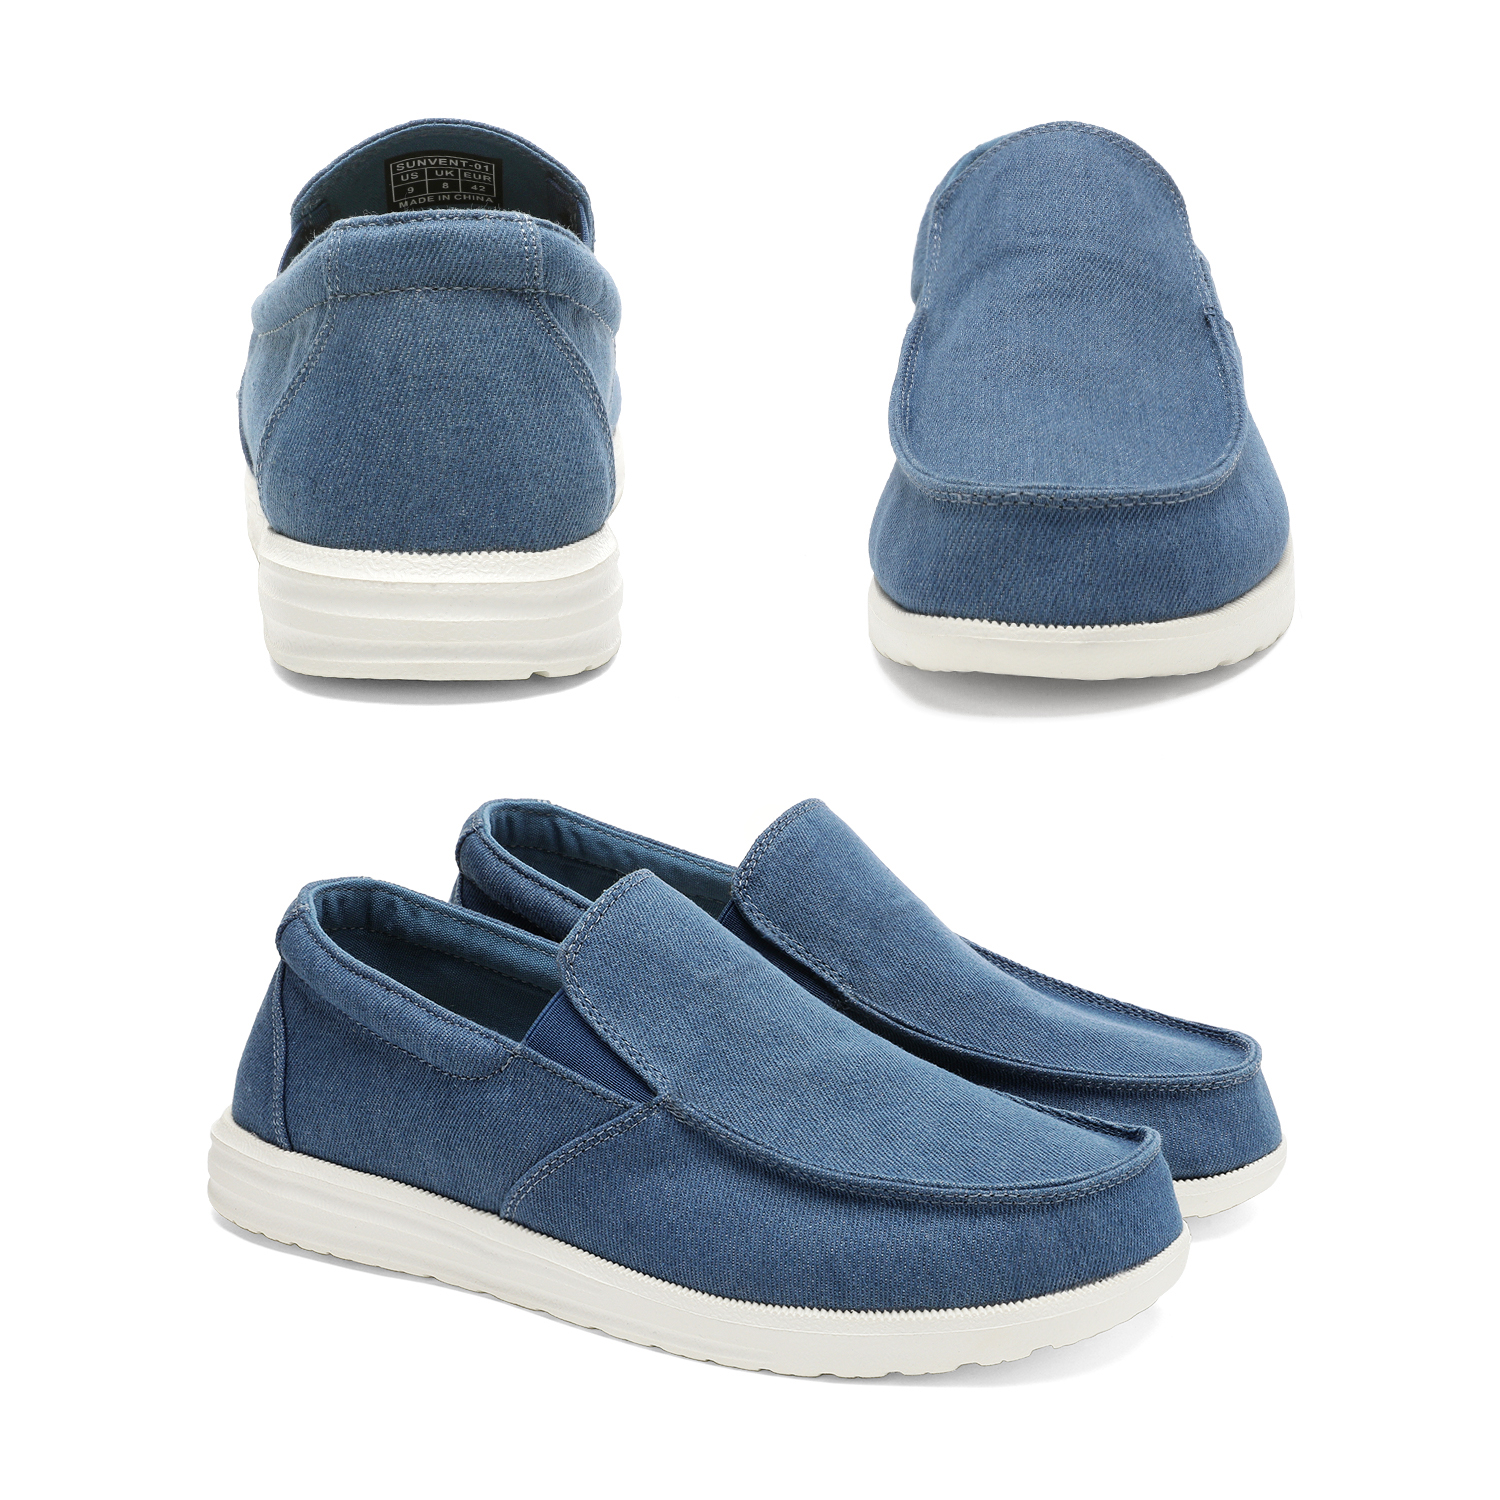 Bruno Marc Men's Slip On Loafer Walking Shoes SUNVENT-01 BLUE/DENIM size 12 - image 5 of 6